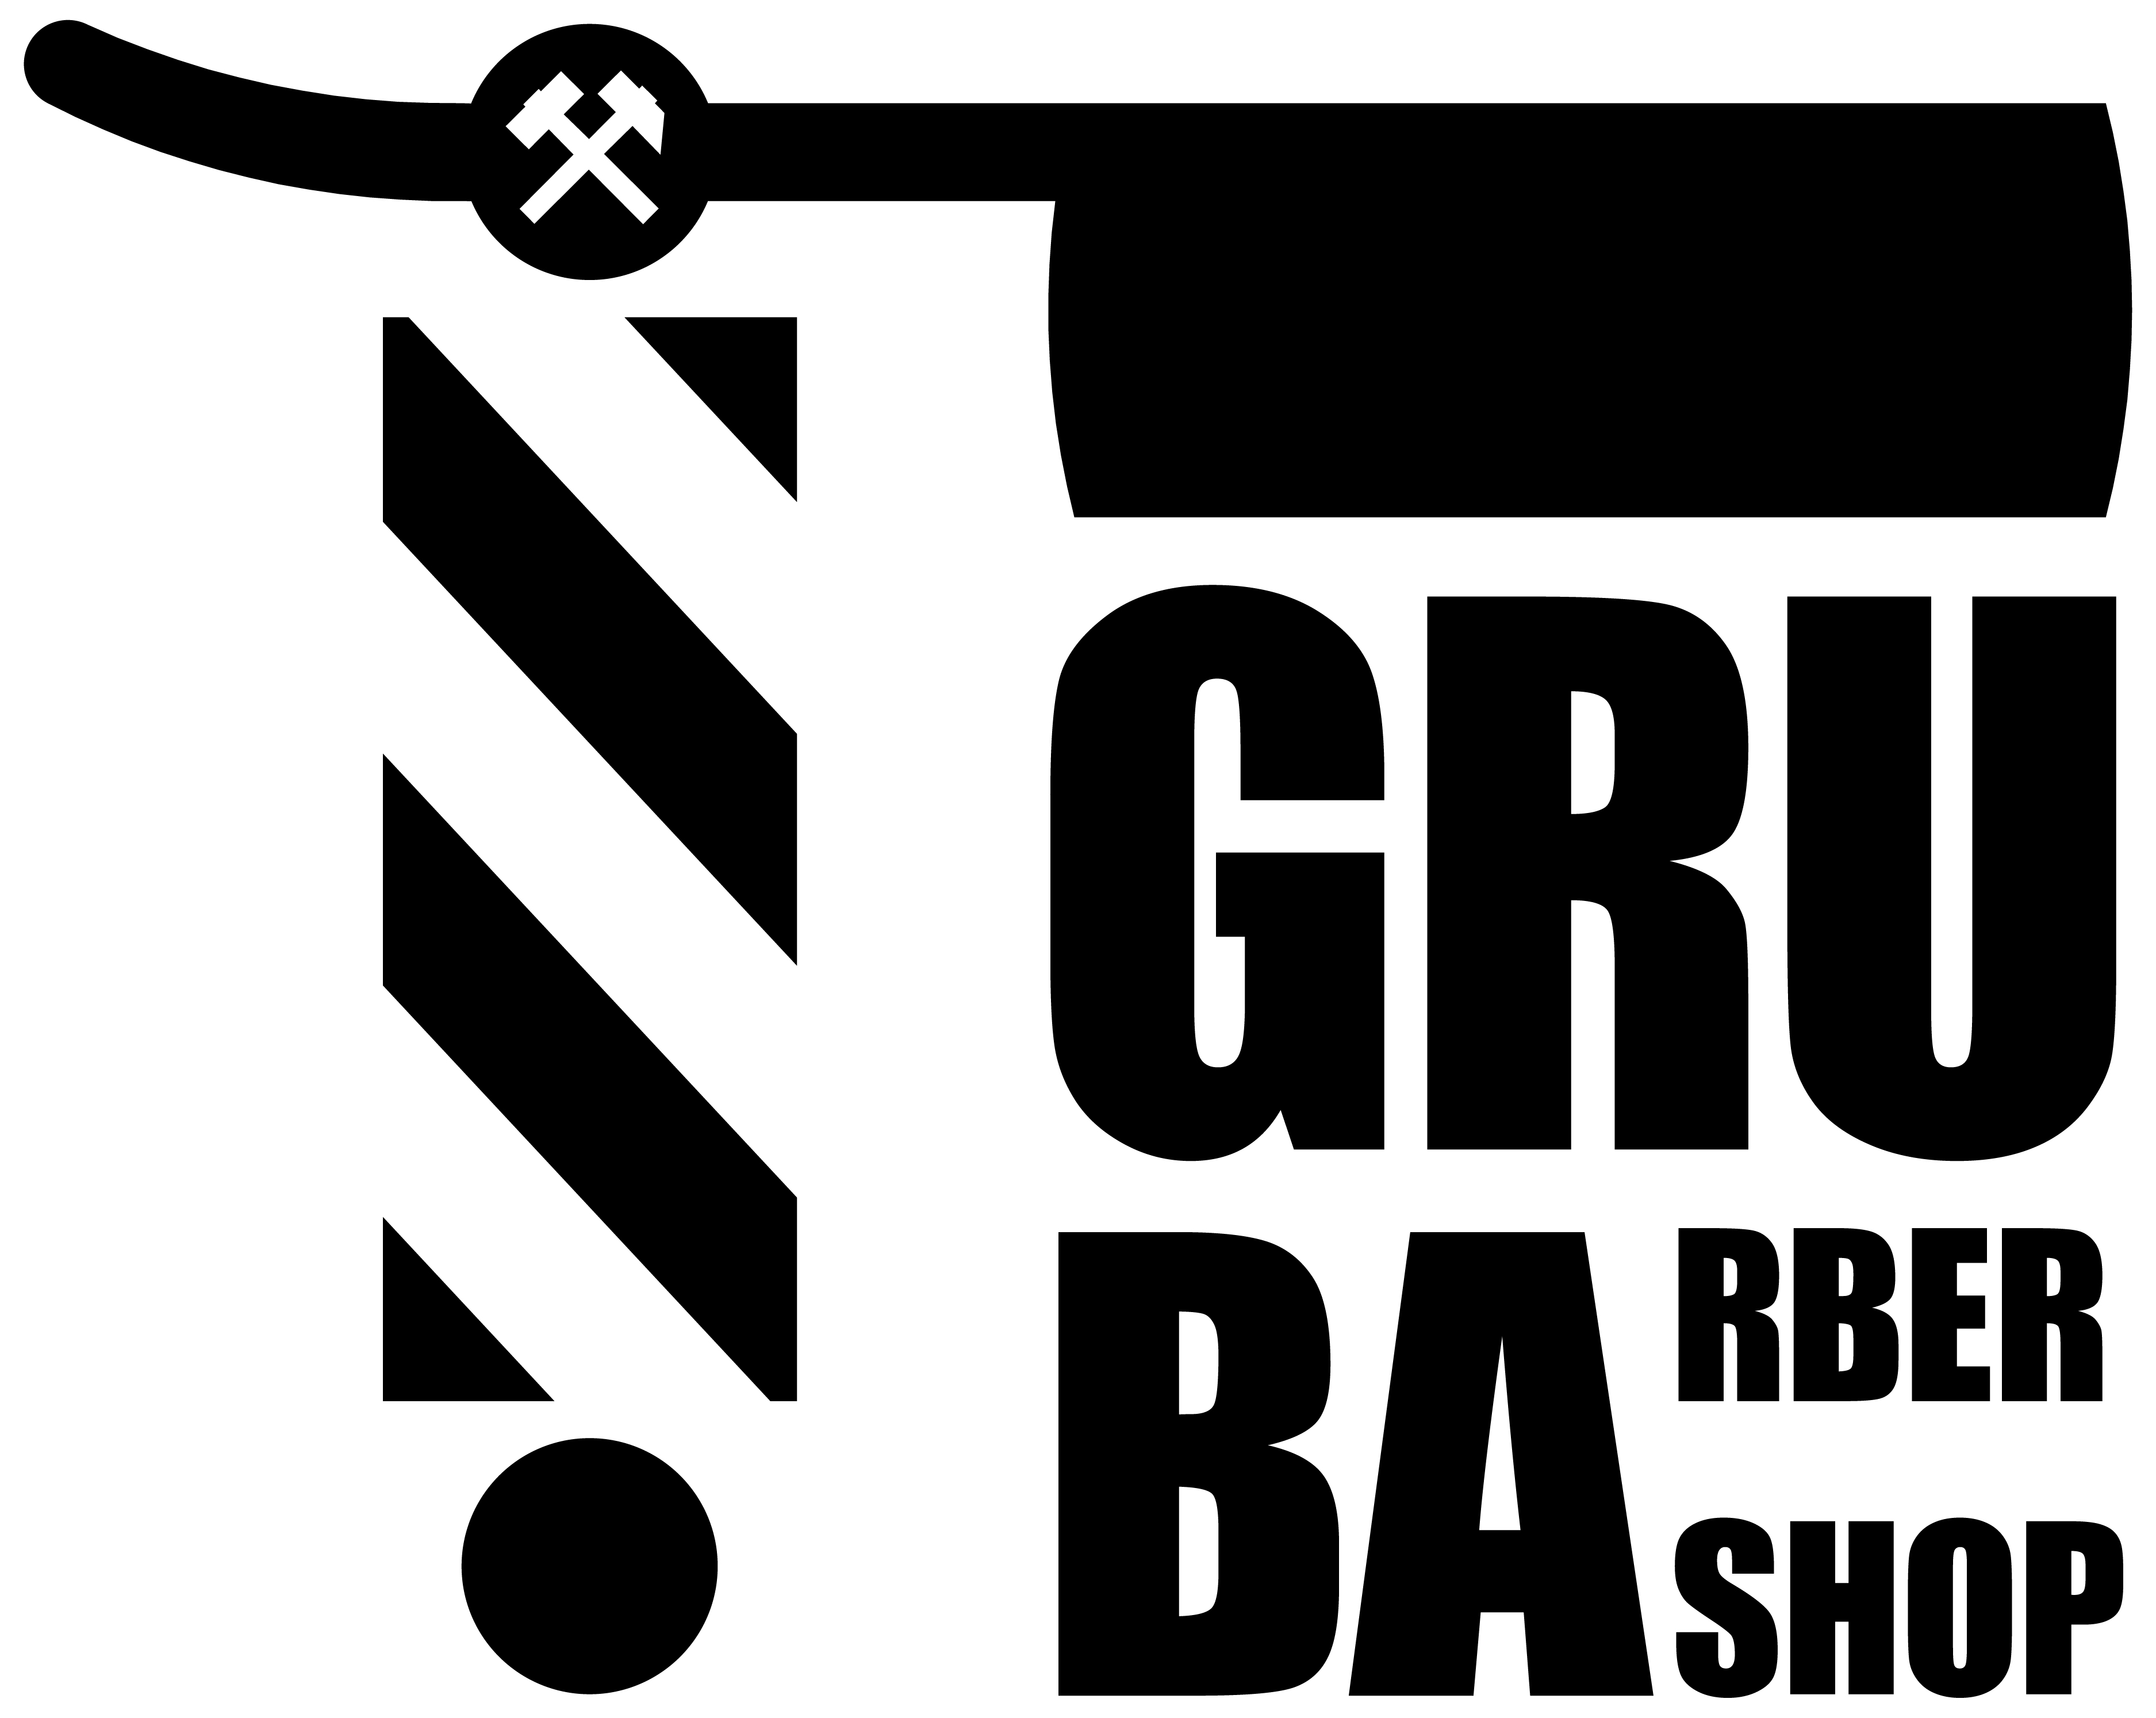 GRUBA Barber Shop Wolności 230, Wolności 230, 41-800, Zabrze